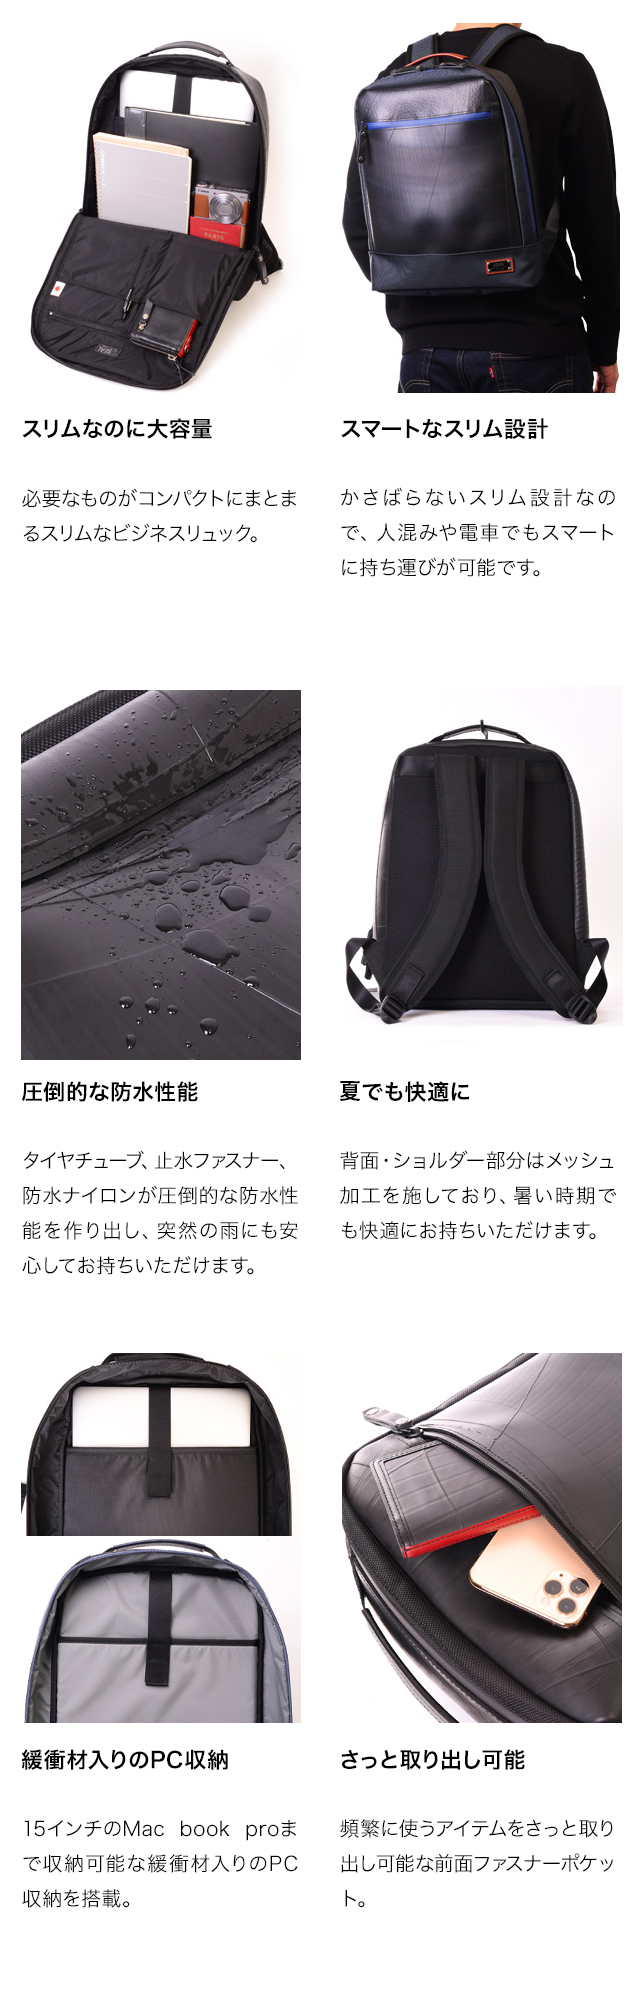 ビジネスリュック waterproof model-日本職人が作るトート・ショルダー バッグ・財布 SEAL